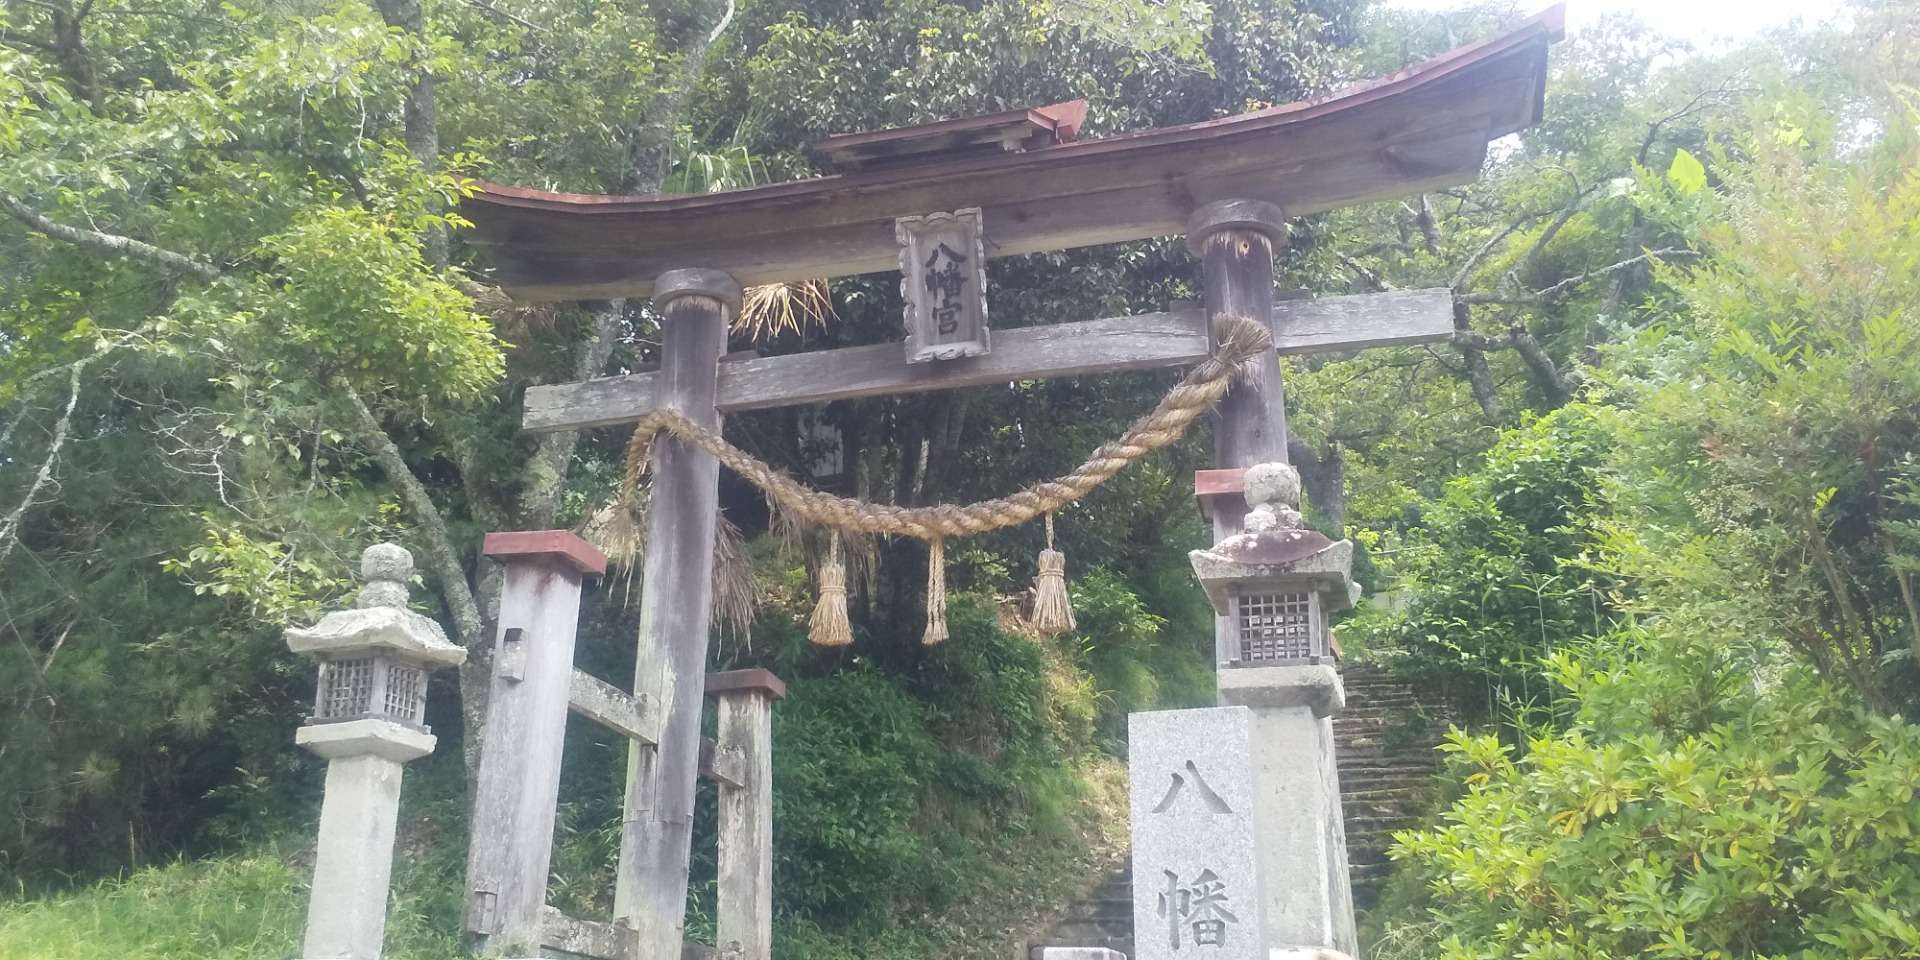 両部鳥居再建に向けての御用材を神社の持山から伐採しました。